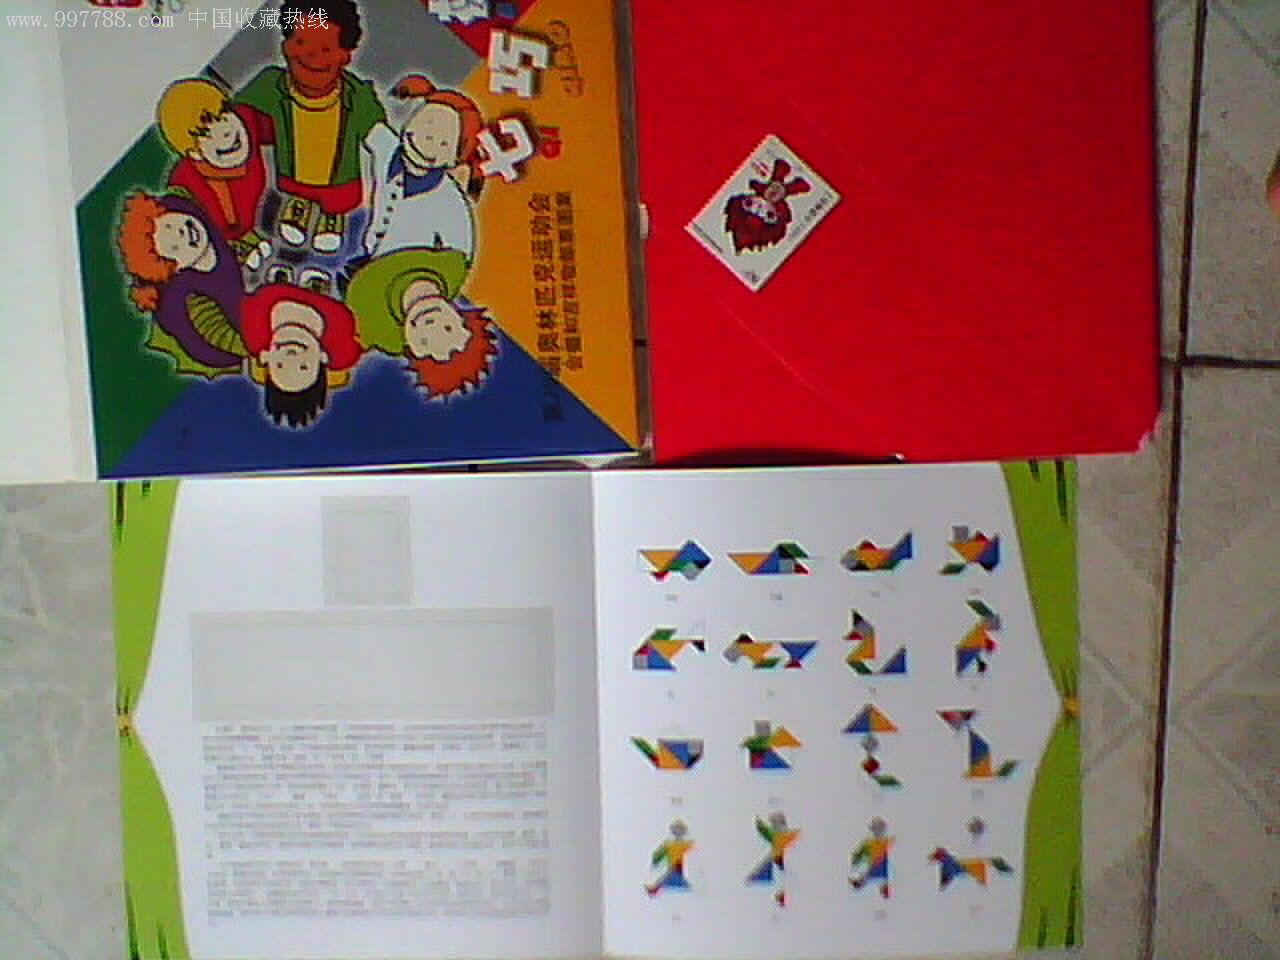 第二十九届奥林匹克运动会会徽和吉祥物邮票图案七巧板